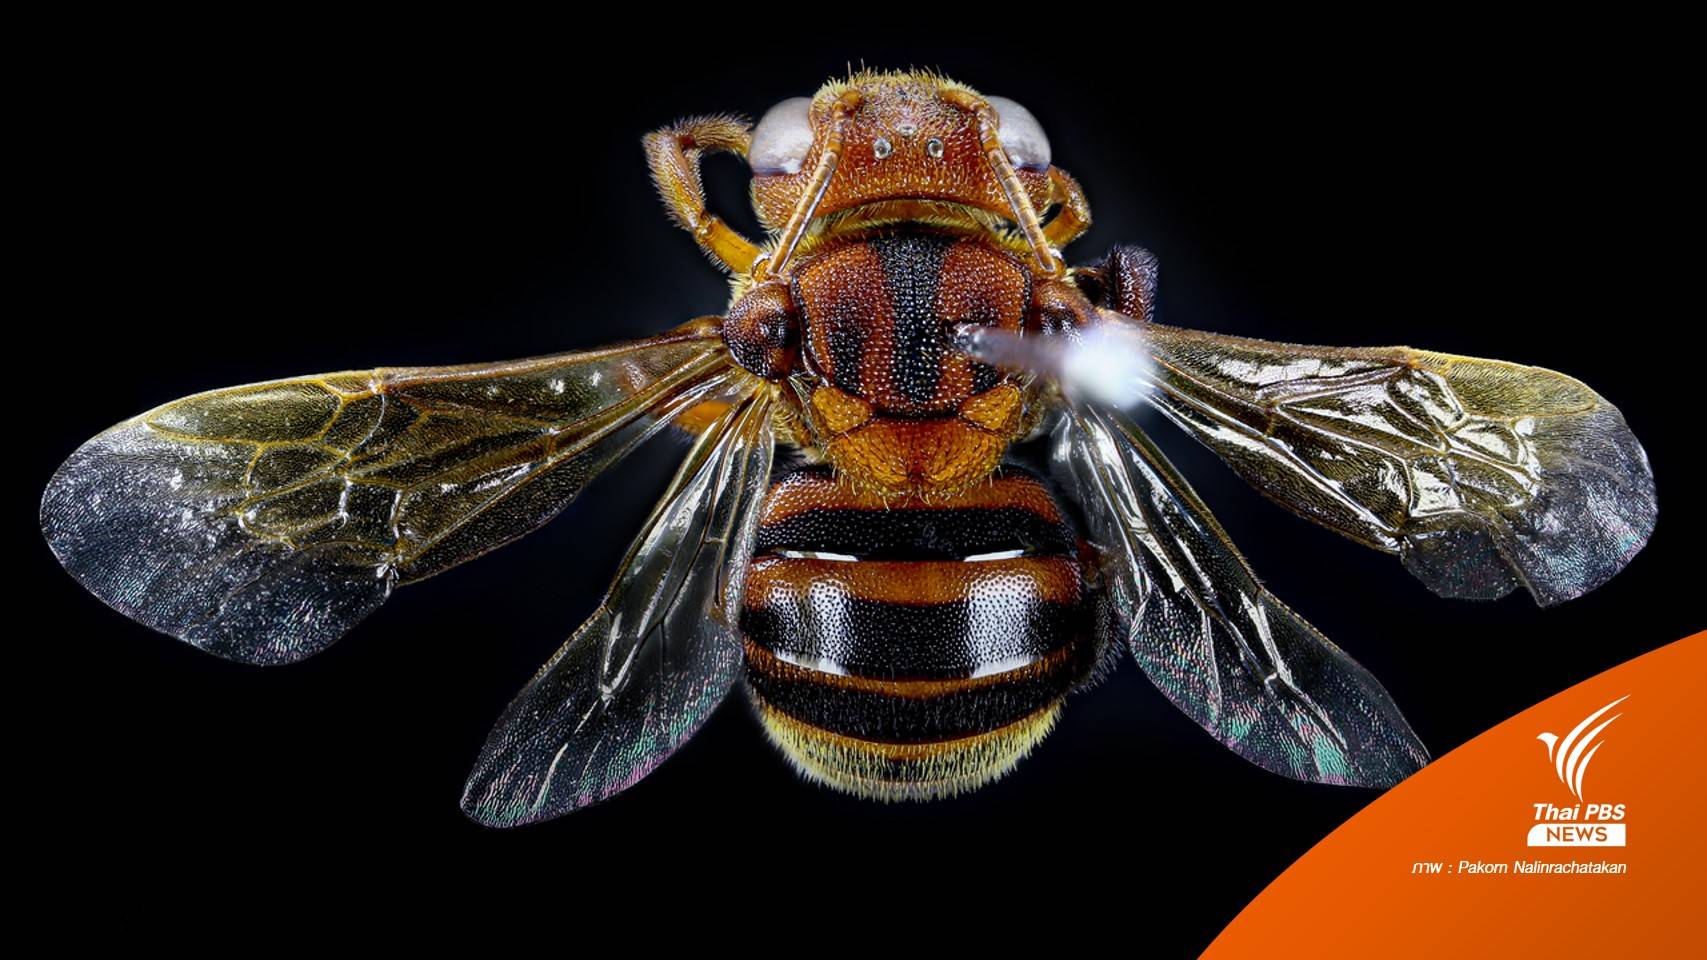 มรภ.อุบลฯ พบผึ้งชนิดใหม่ของโลก "หยาดอำพันภูจองนายอย"